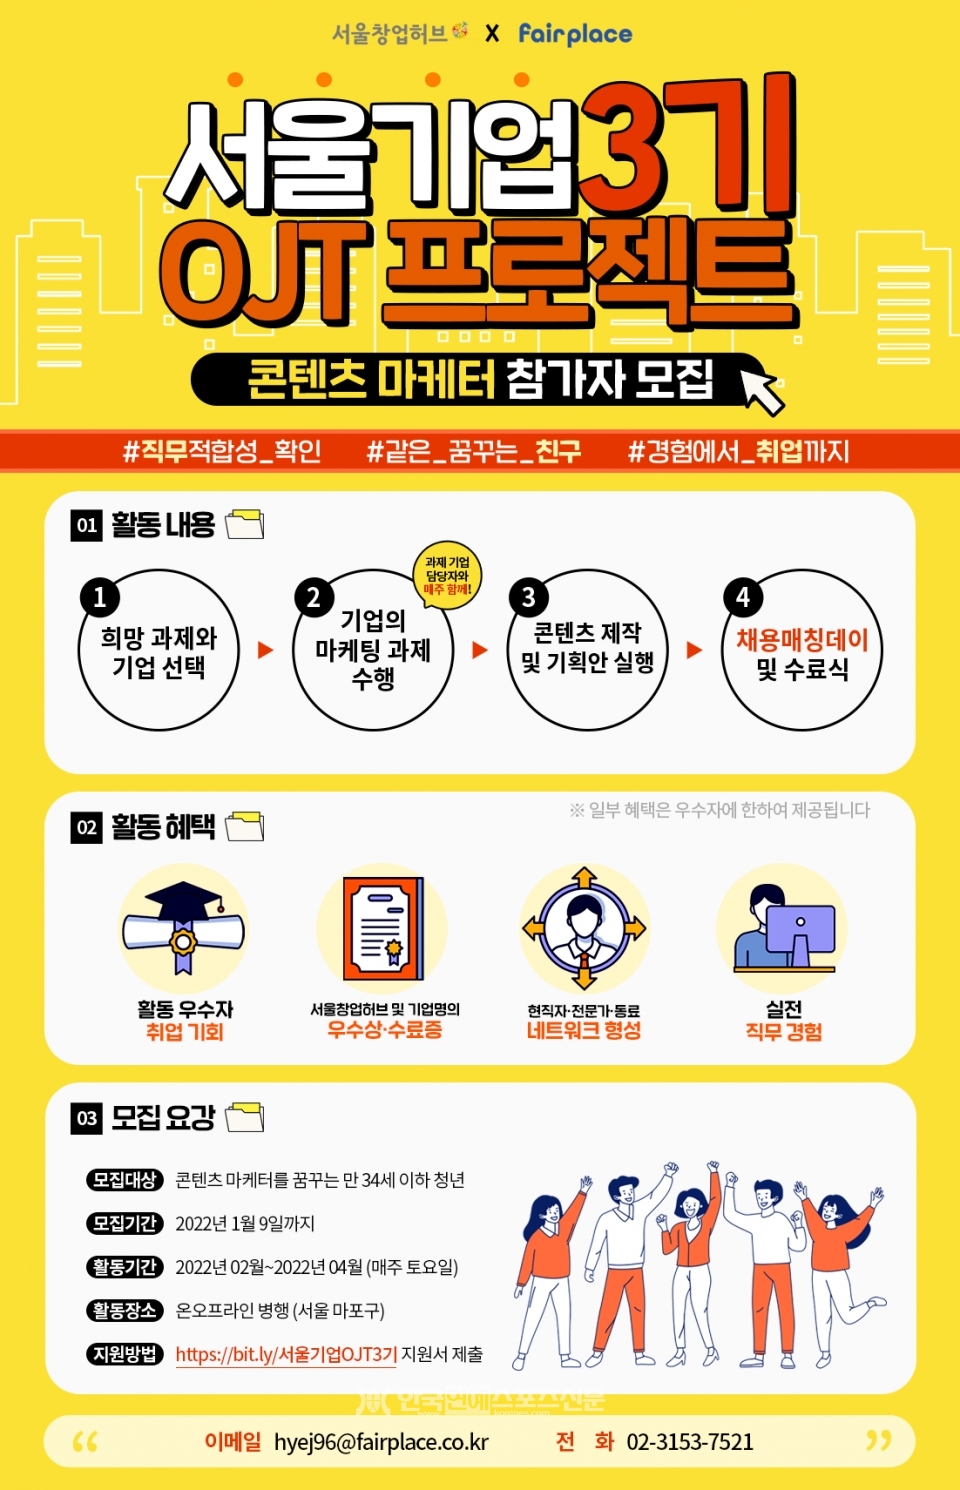 서울기업 OJT 프로젝트 3기 모집 포스터/ 출처: 페어플레이스